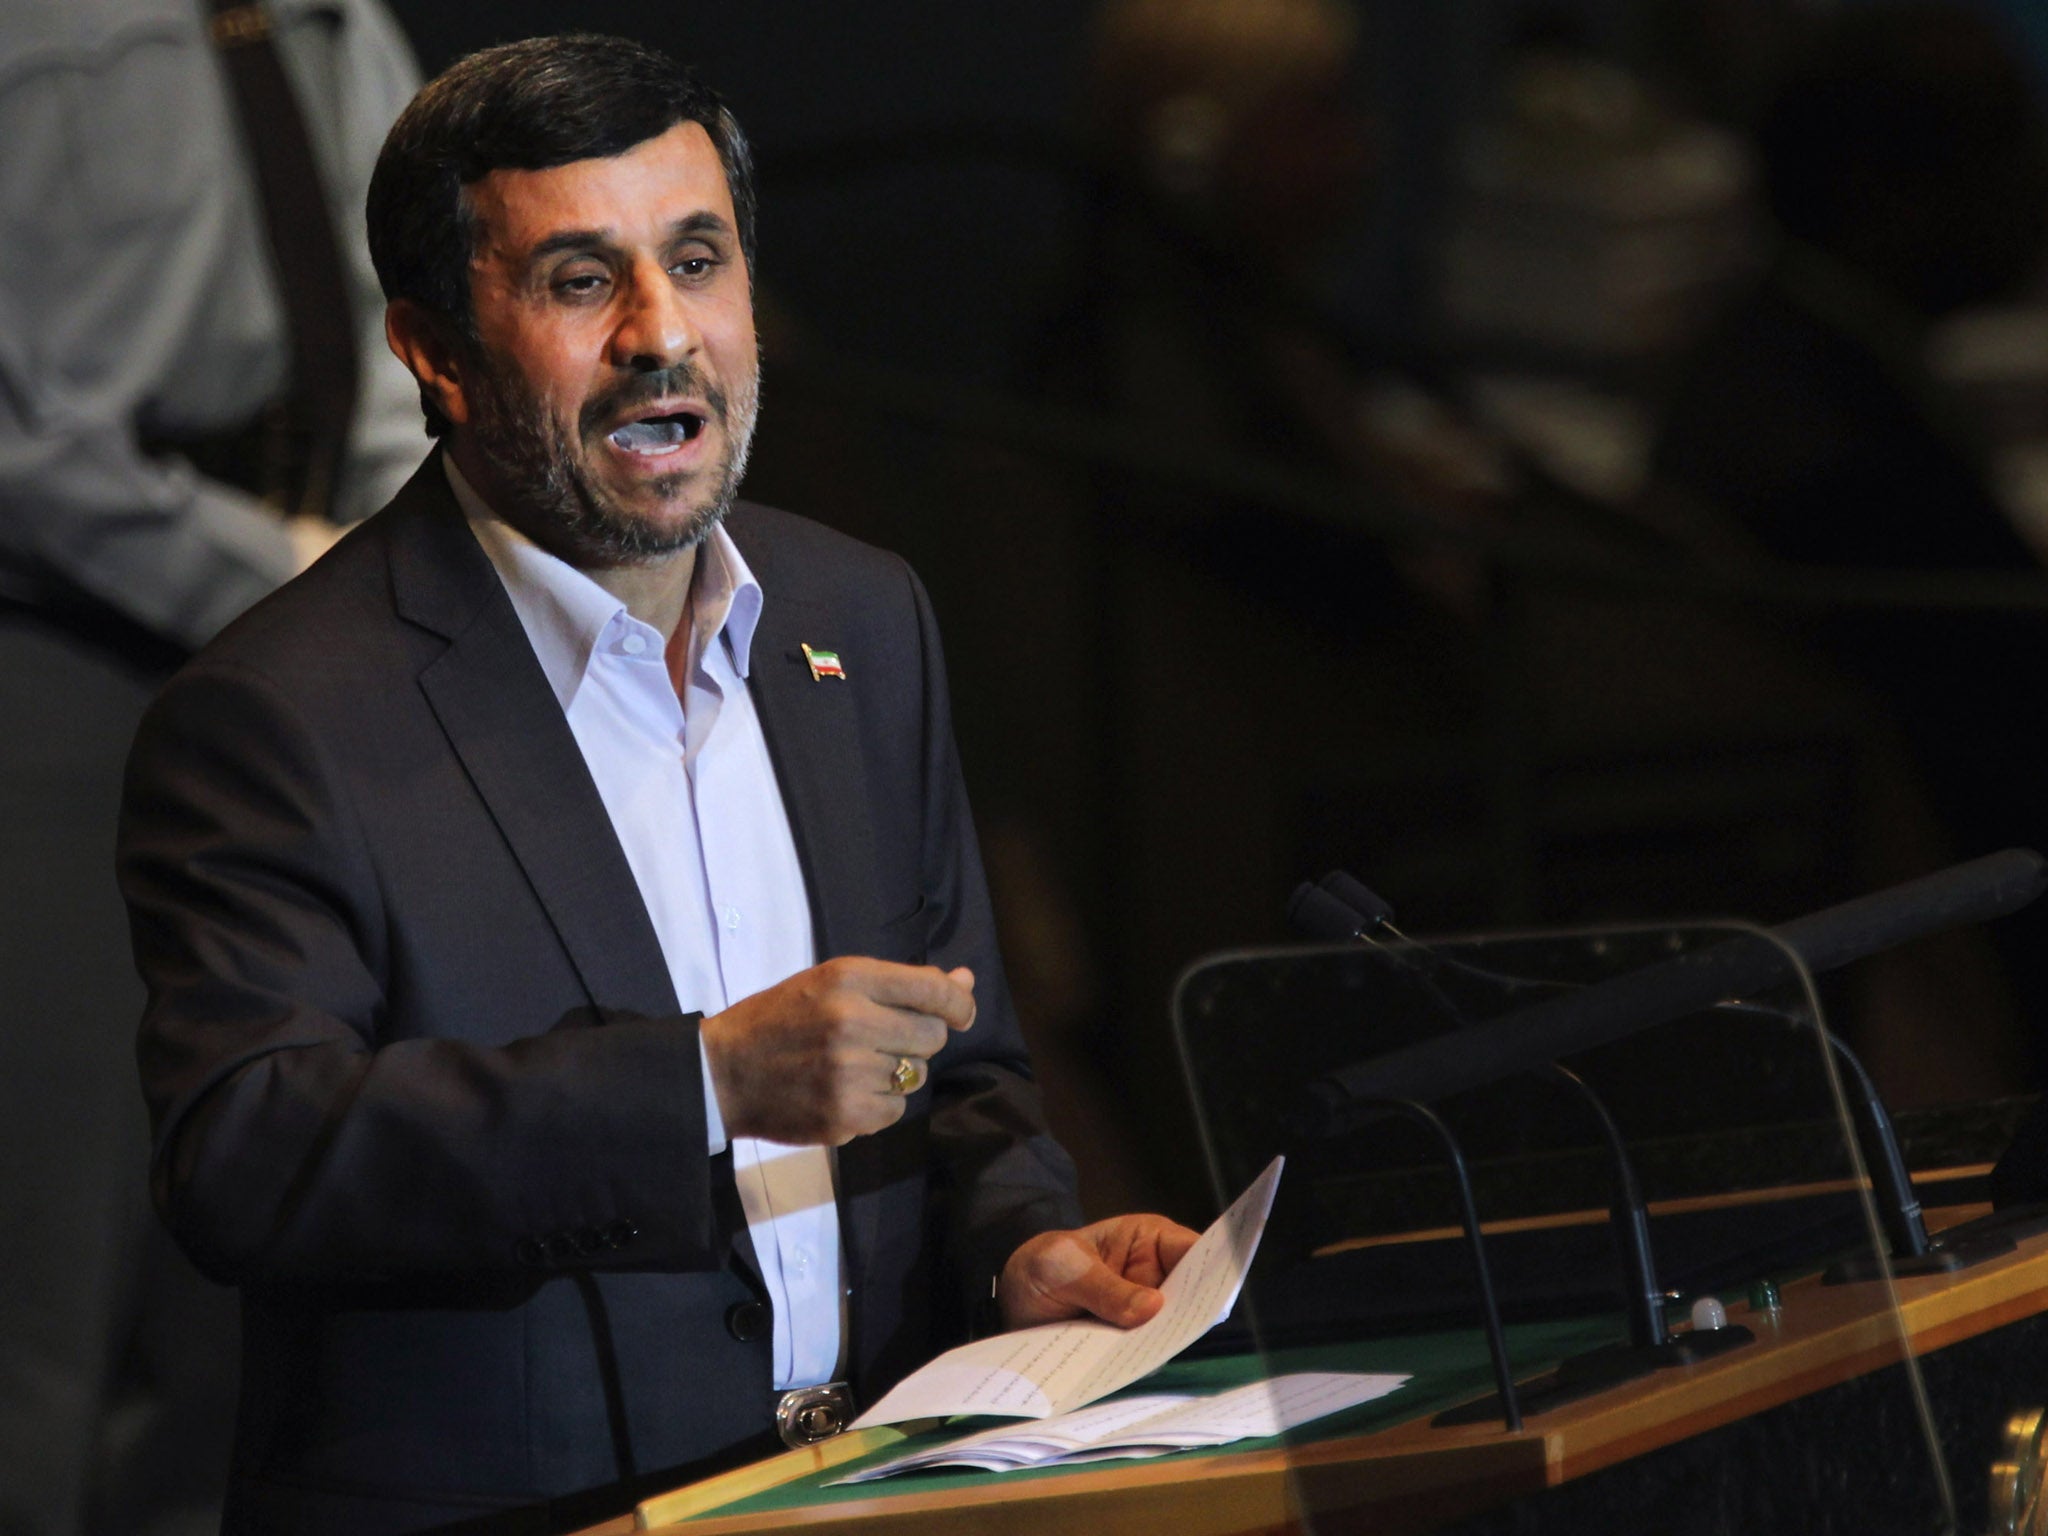 President Mahmoud Ahmadinejad